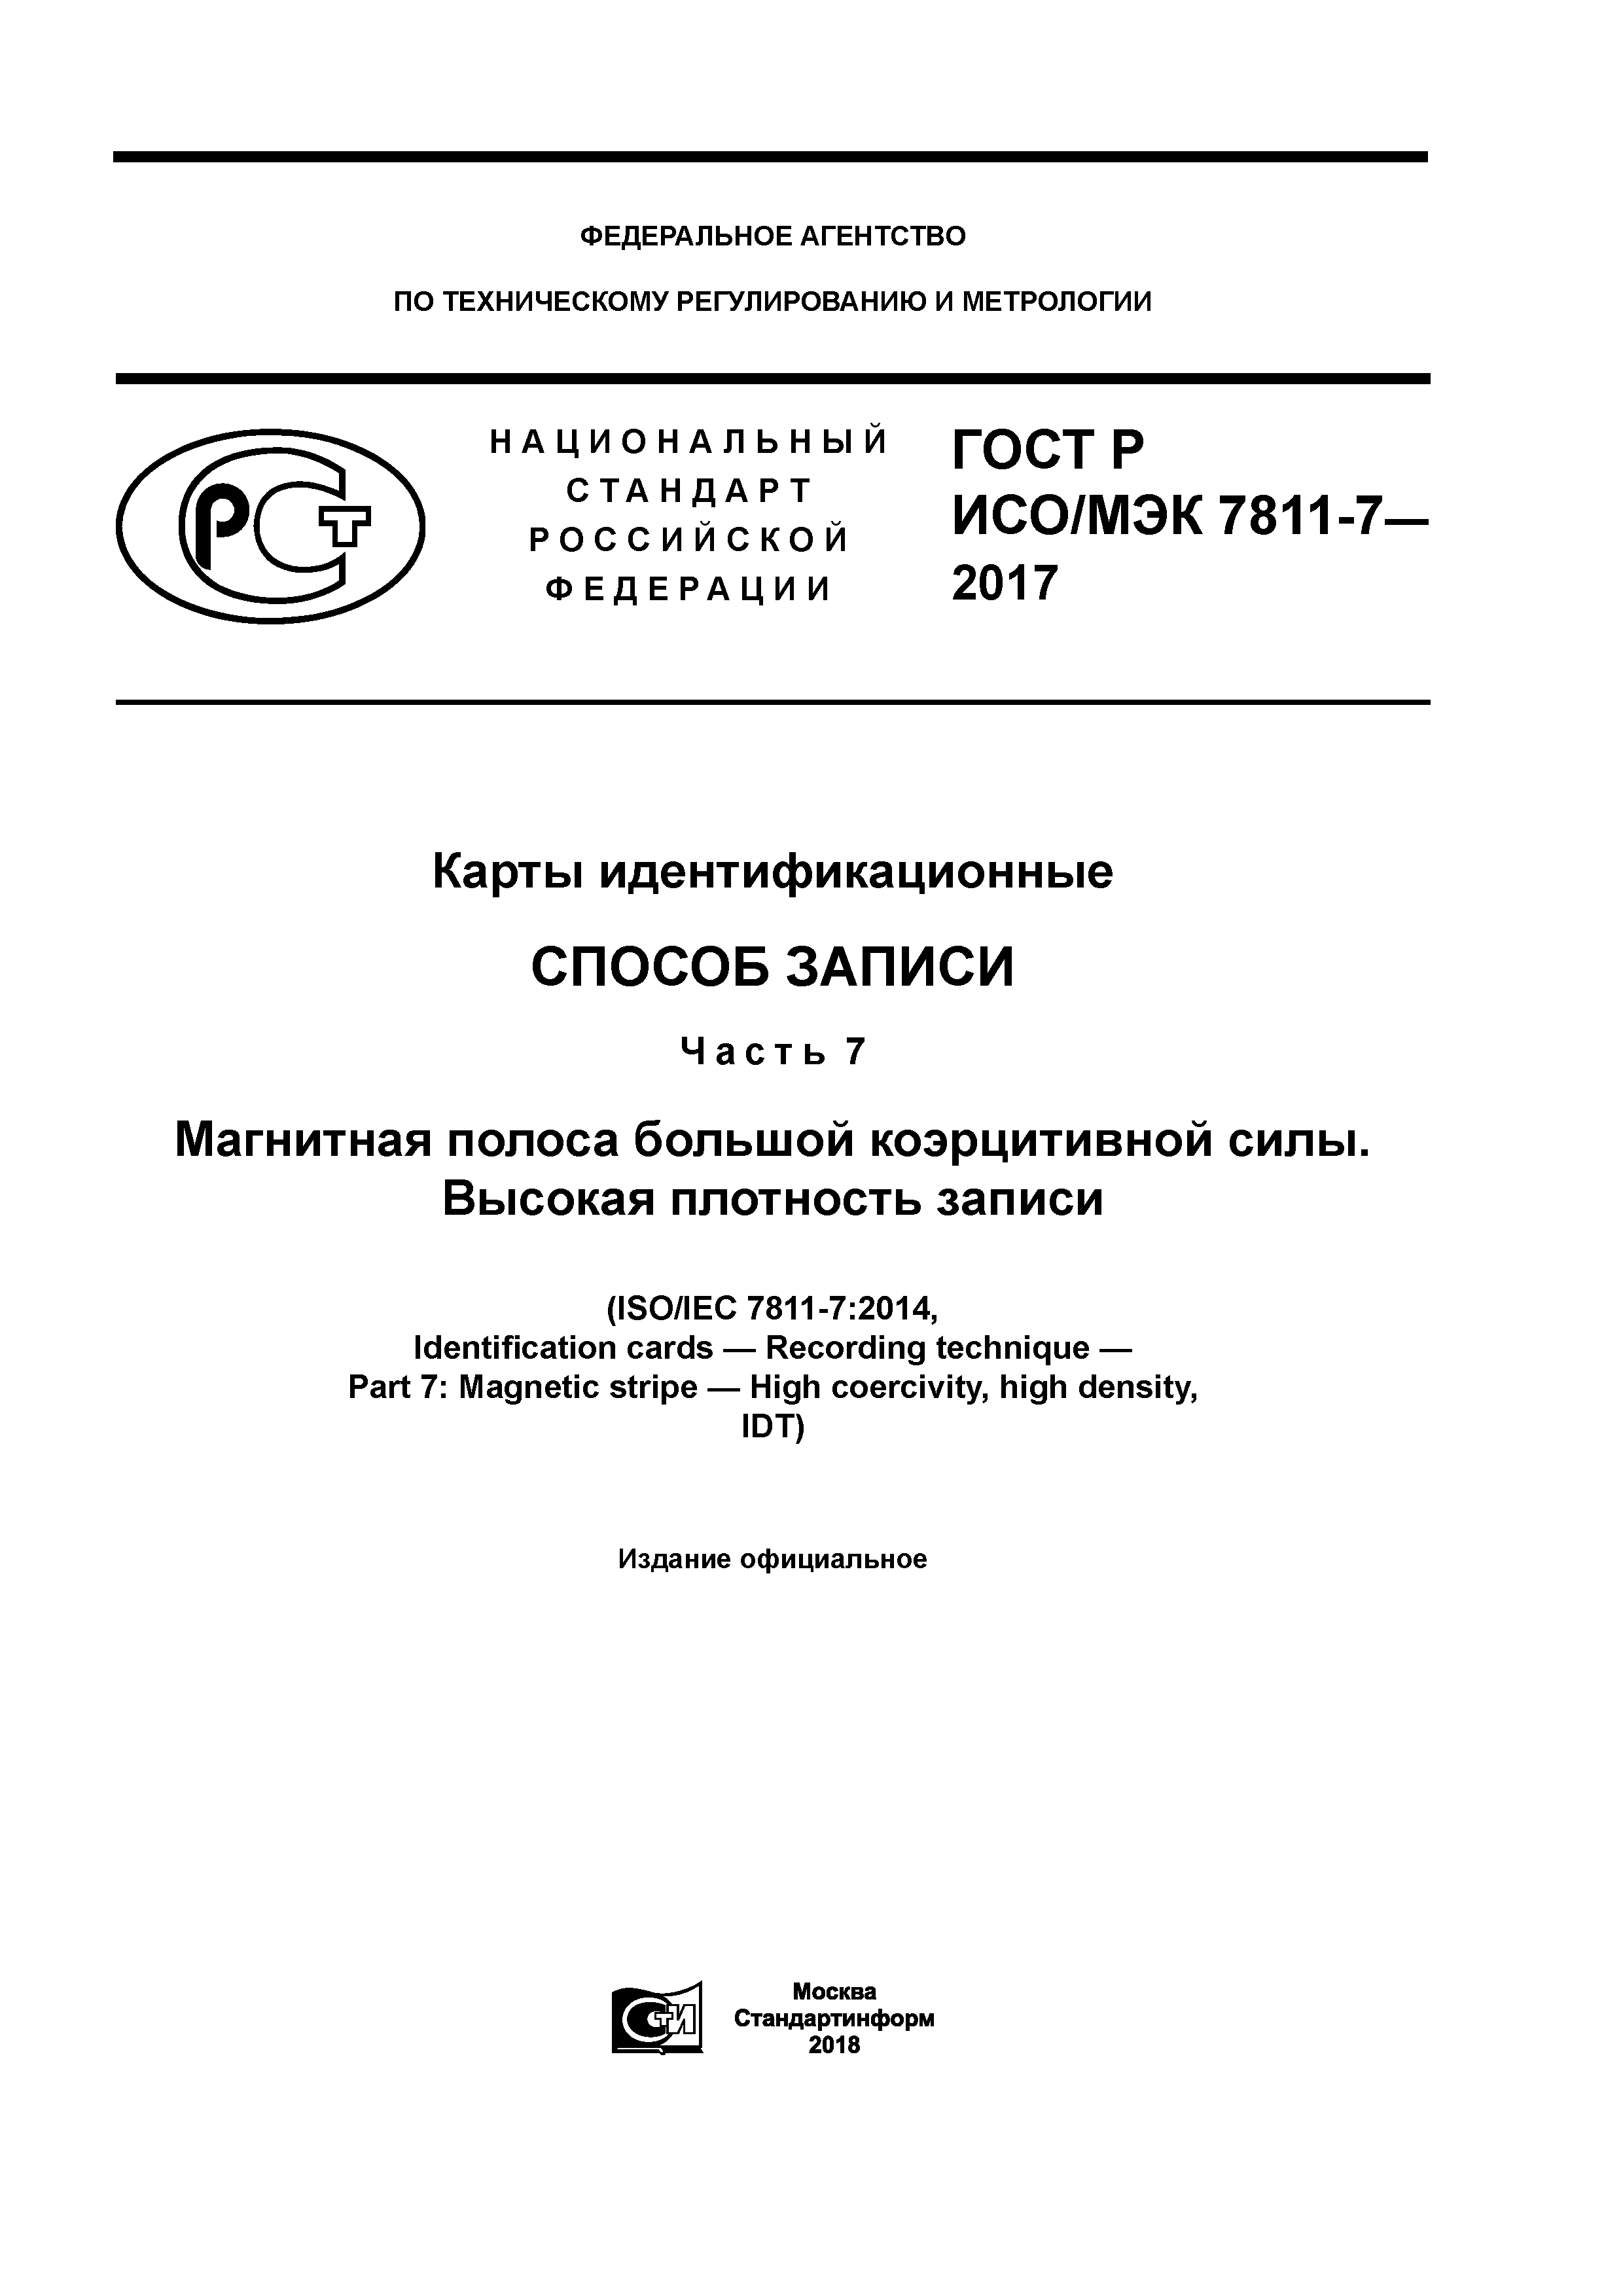 ГОСТ Р ИСО/МЭК 7811-7-2017